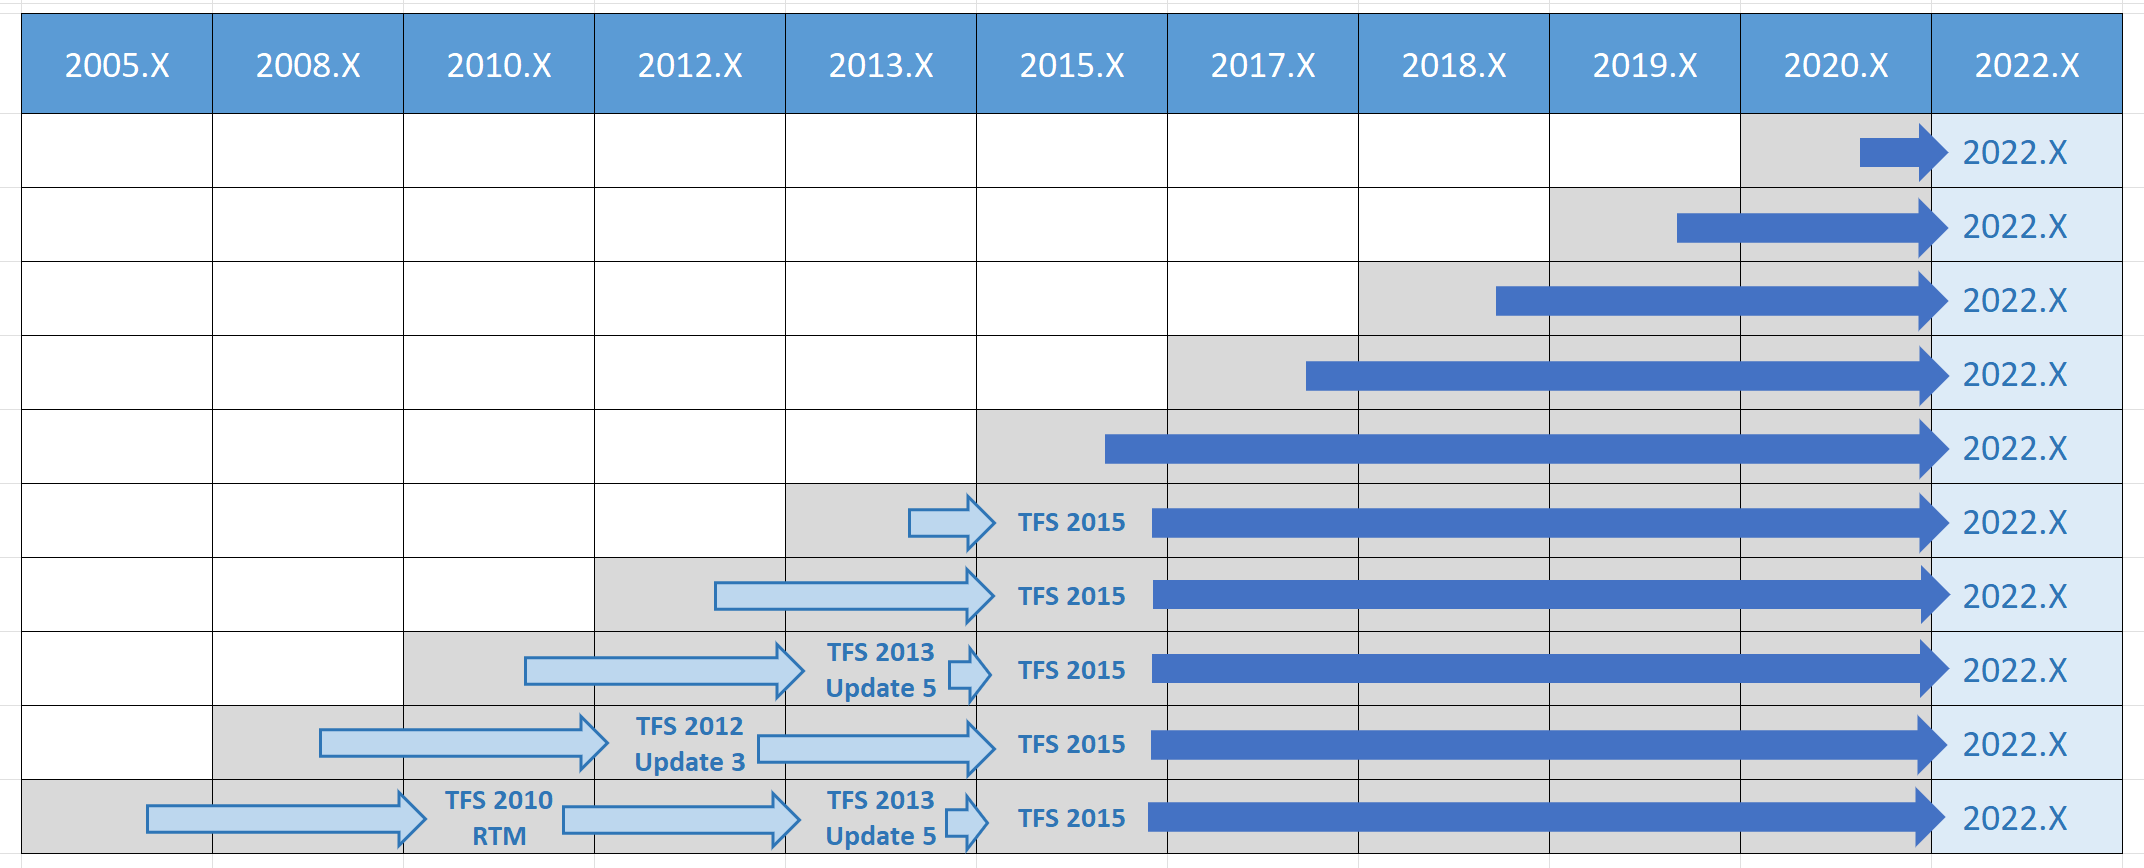 Matriz de rutas de actualización de Azure DevOps 2022 para todas las versiones anteriores.